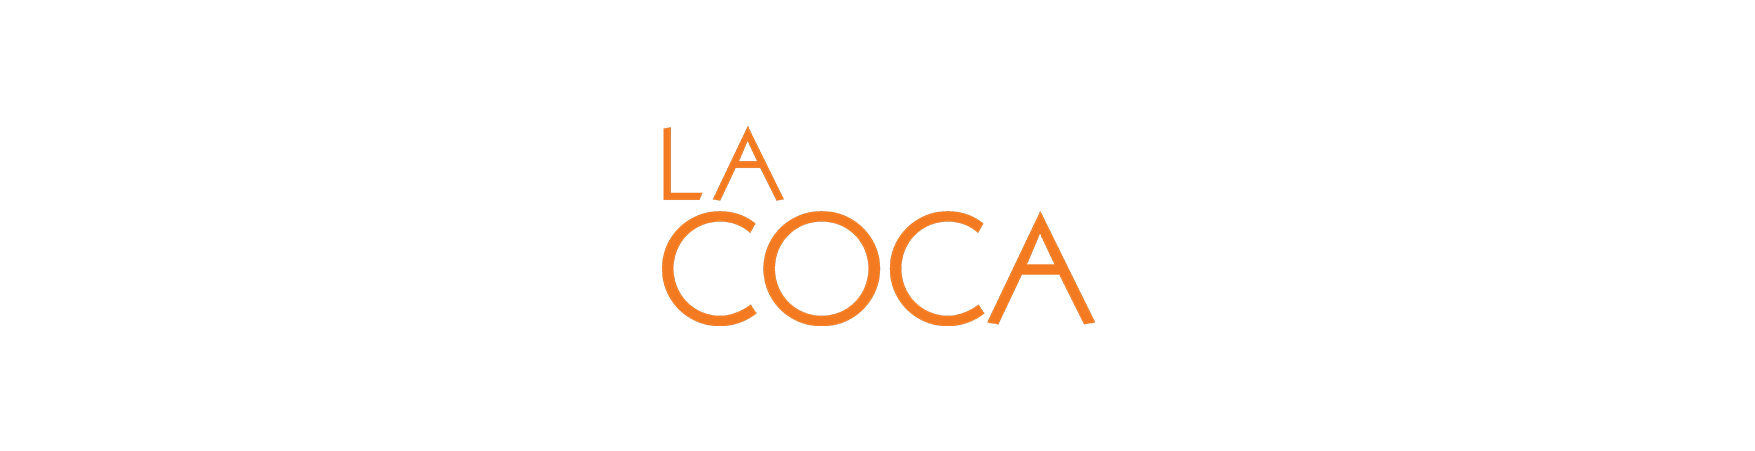 Lacoca